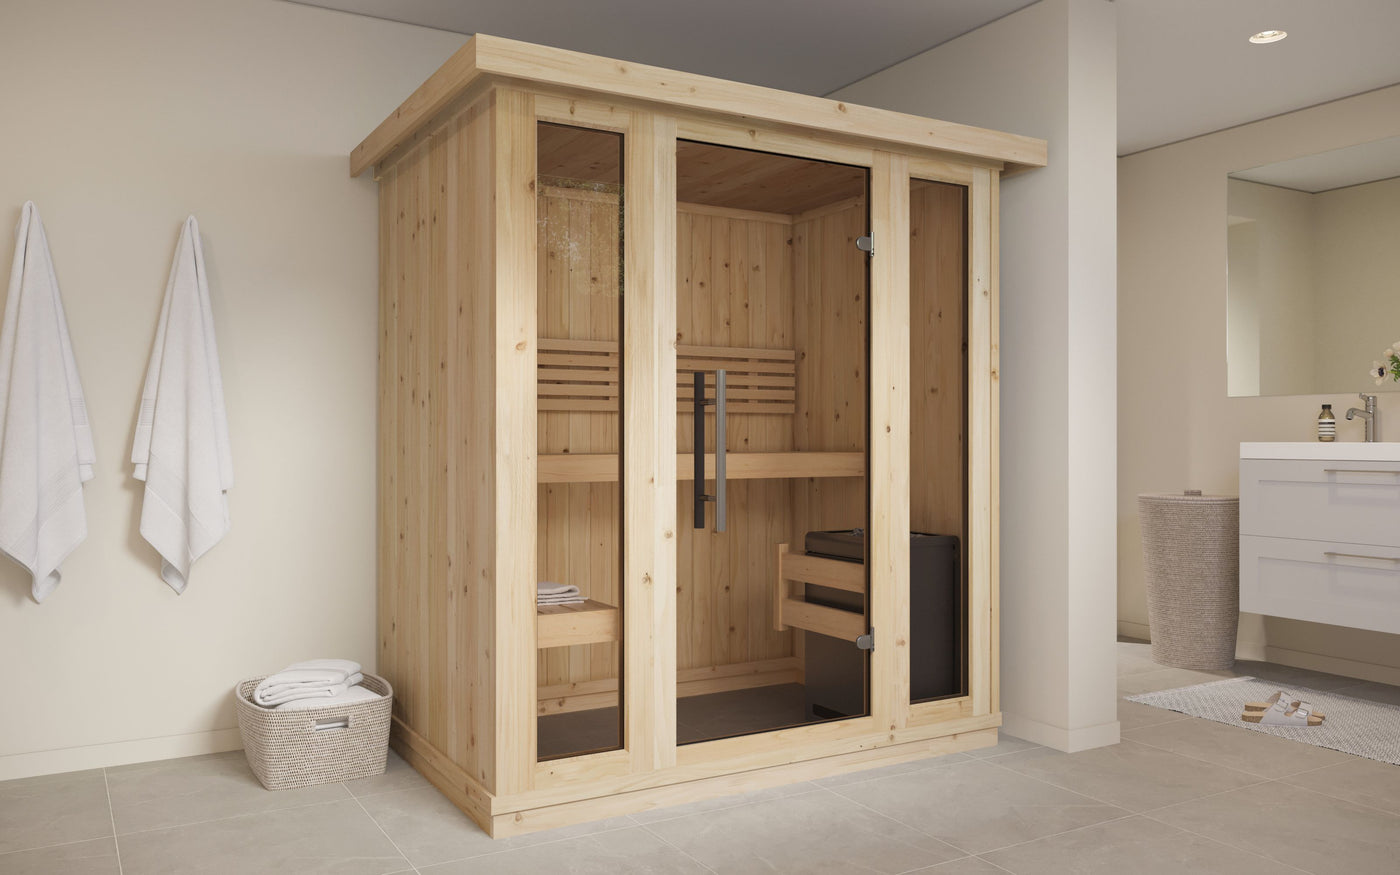 Traditionelle Sauna für 2-4 Personen - 195 x 131 x 200 cm